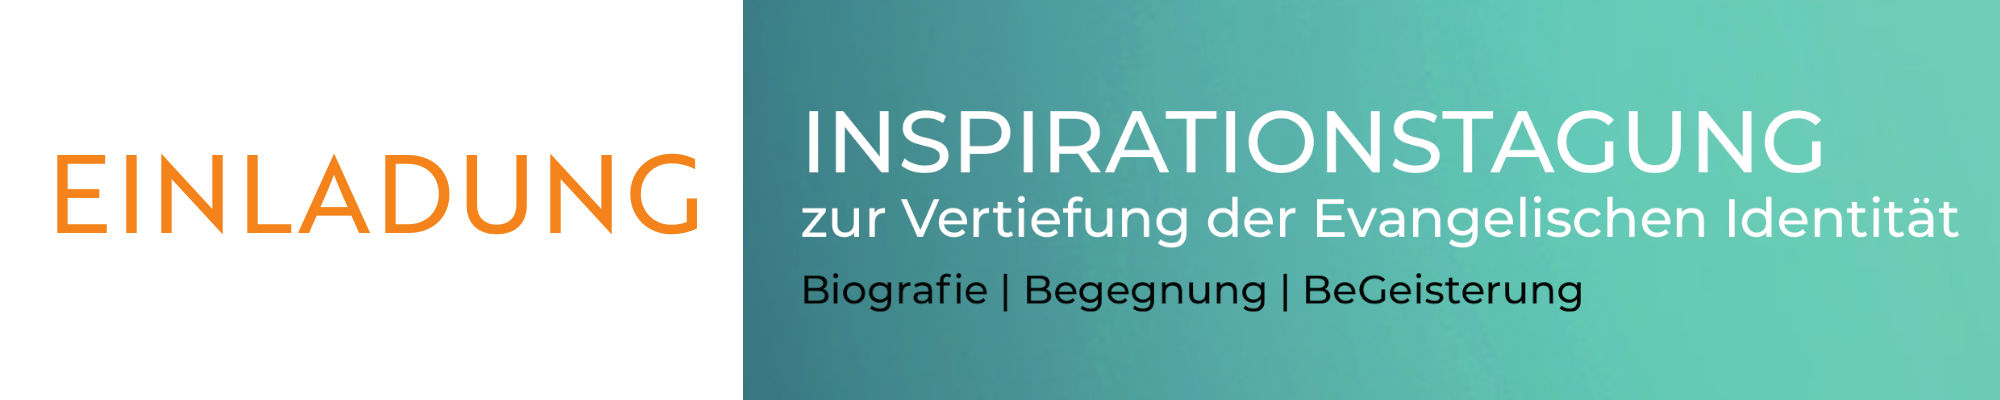 Banner_Inspirationstagung